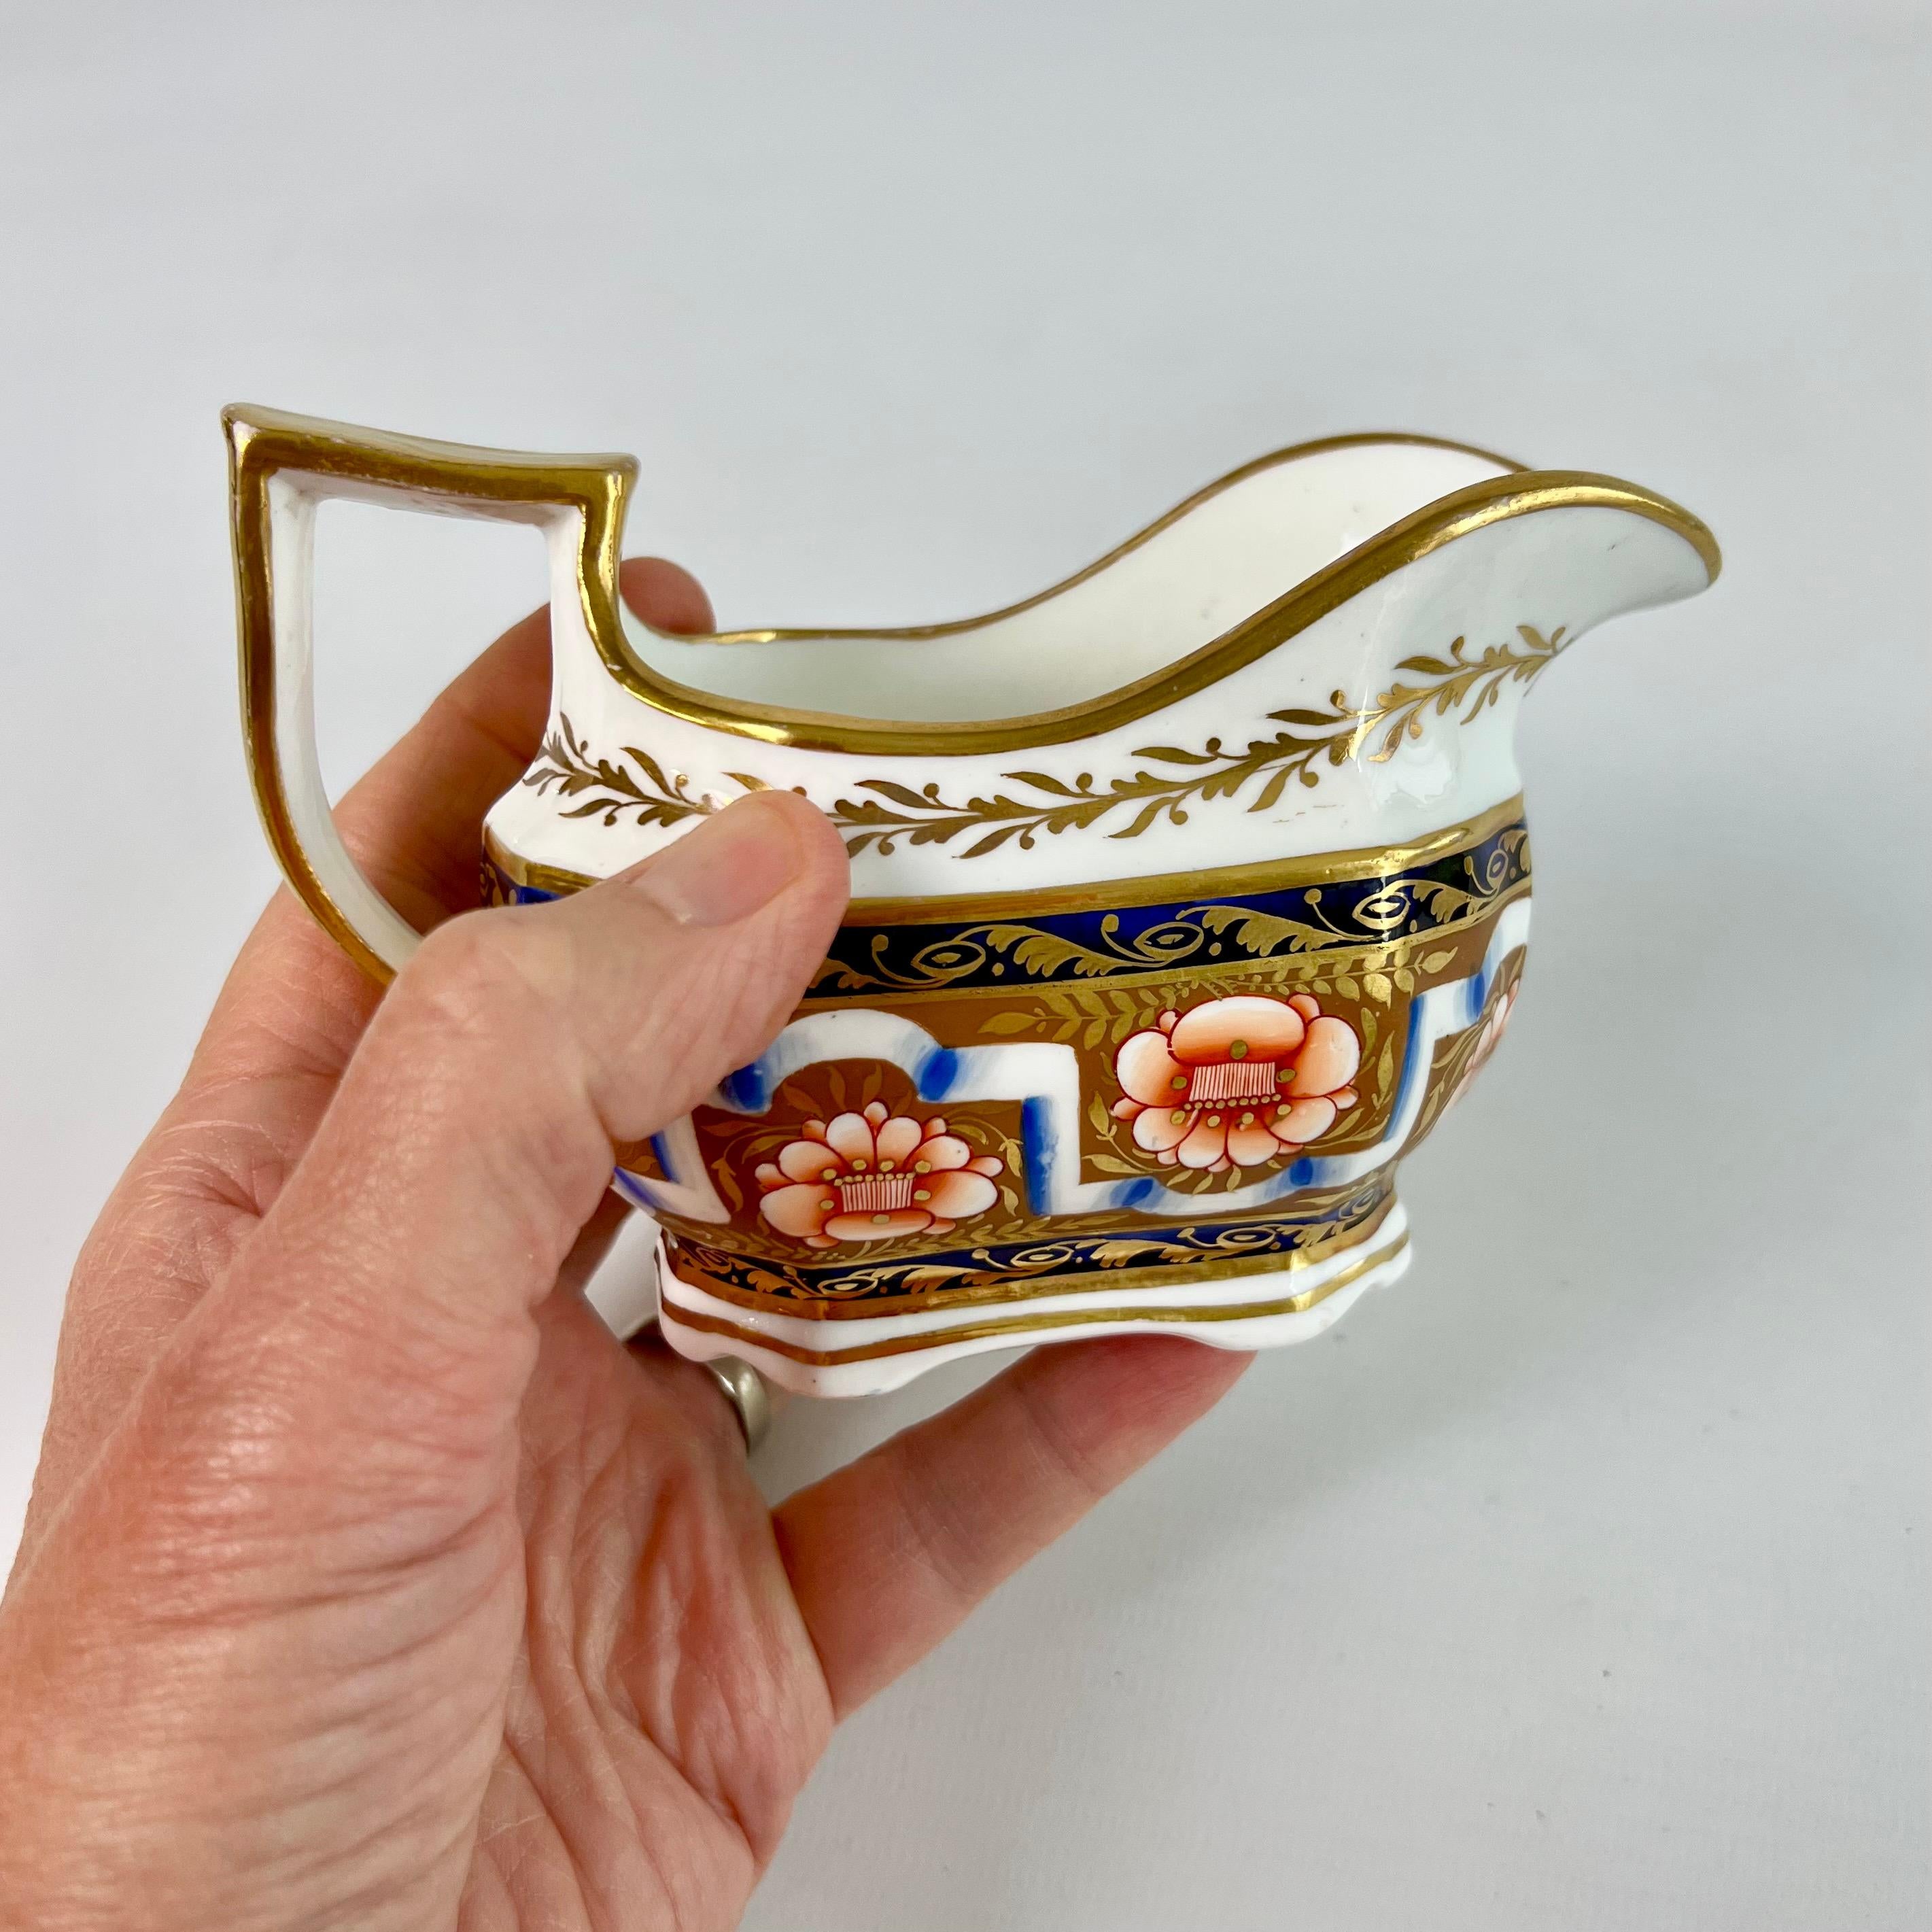 Il s'agit d'un beau pot à lait ou crémier fabriqué par Spode vers 1825. La cruche est décorée d'un beau motif néoclassique aux couleurs Imari et possède une poignée serpent caractéristique. Il a une provenance : il provient de la célèbre collection